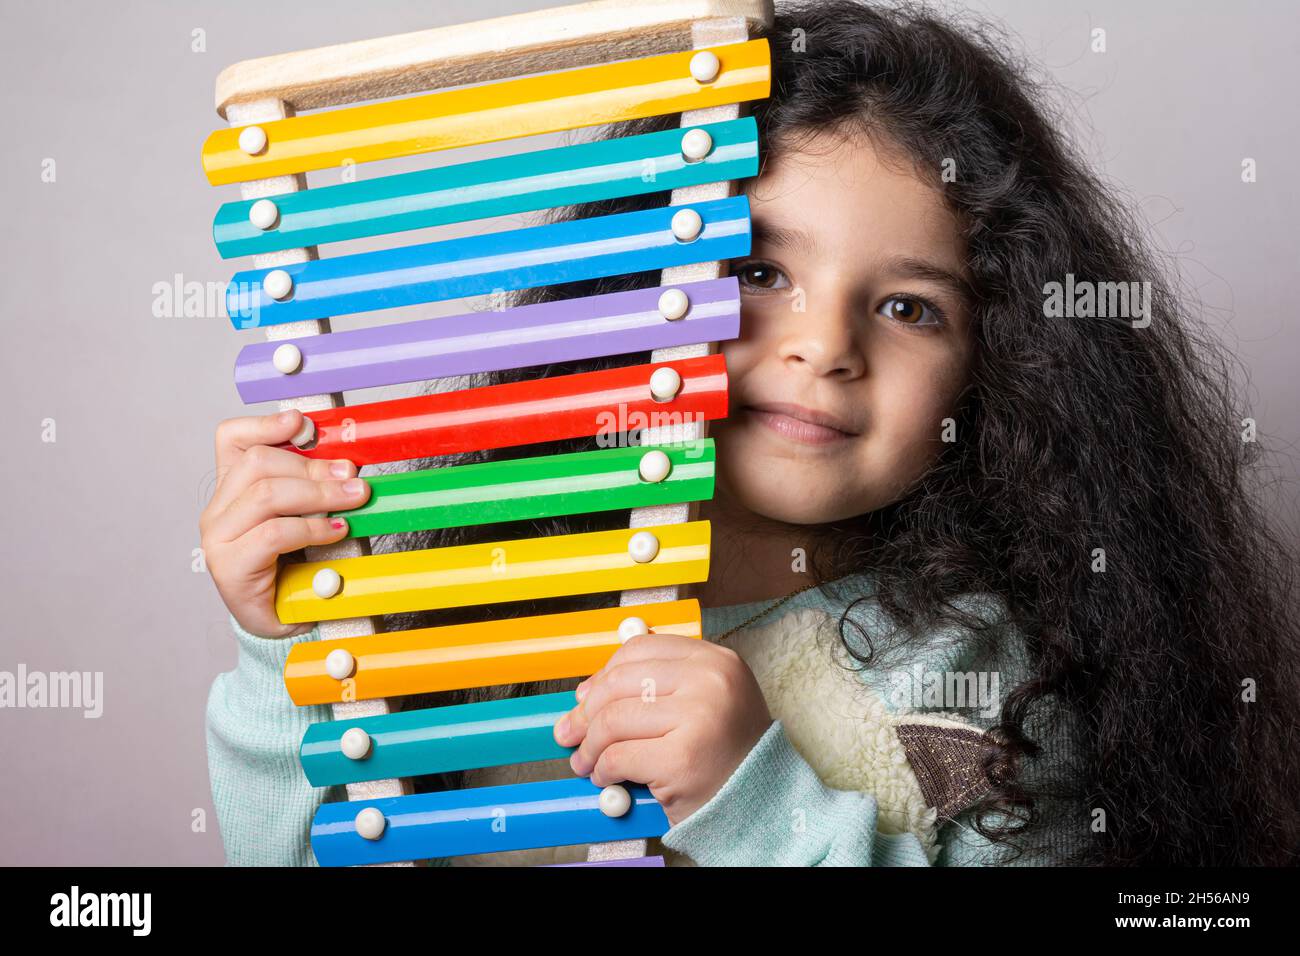 Ritratto di bambina con xylophone in mano guardando in macchina fotografica con espressione, ricordi d'infanzia Foto Stock